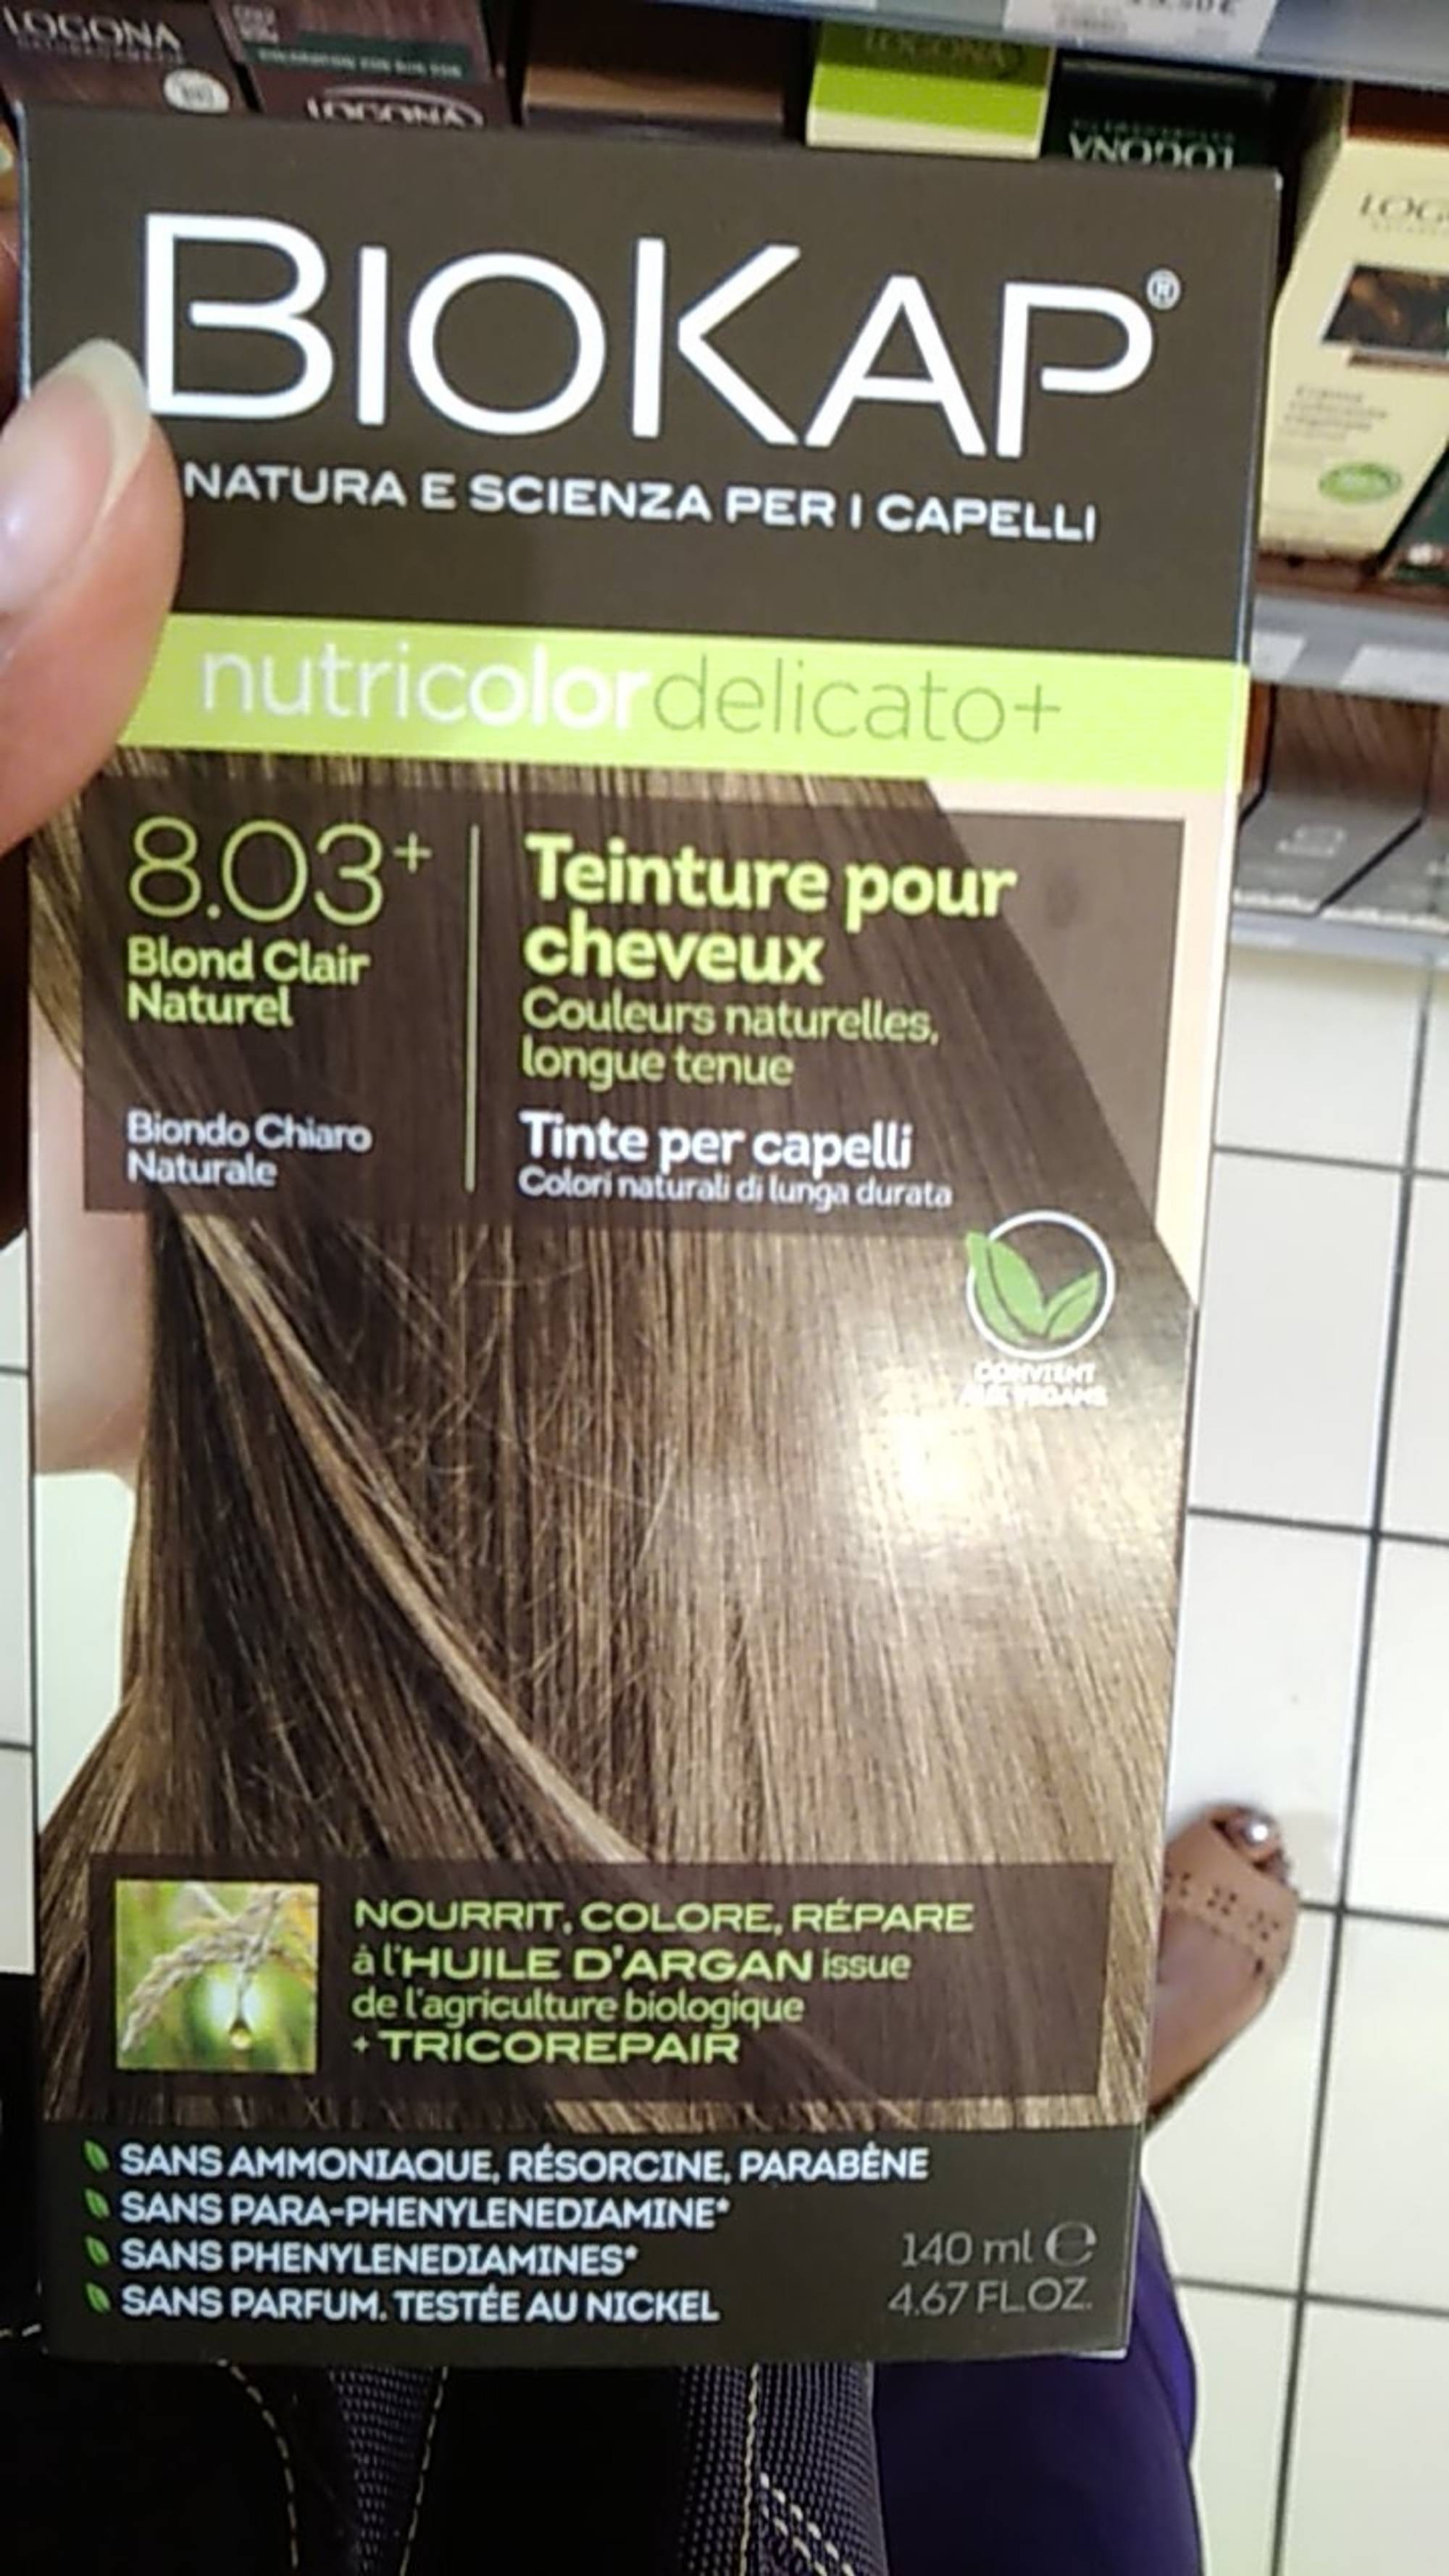 BIOKAP - Nutricolor delicato+ - Teinture pour cheveux - 8.03+ blond clair naturel